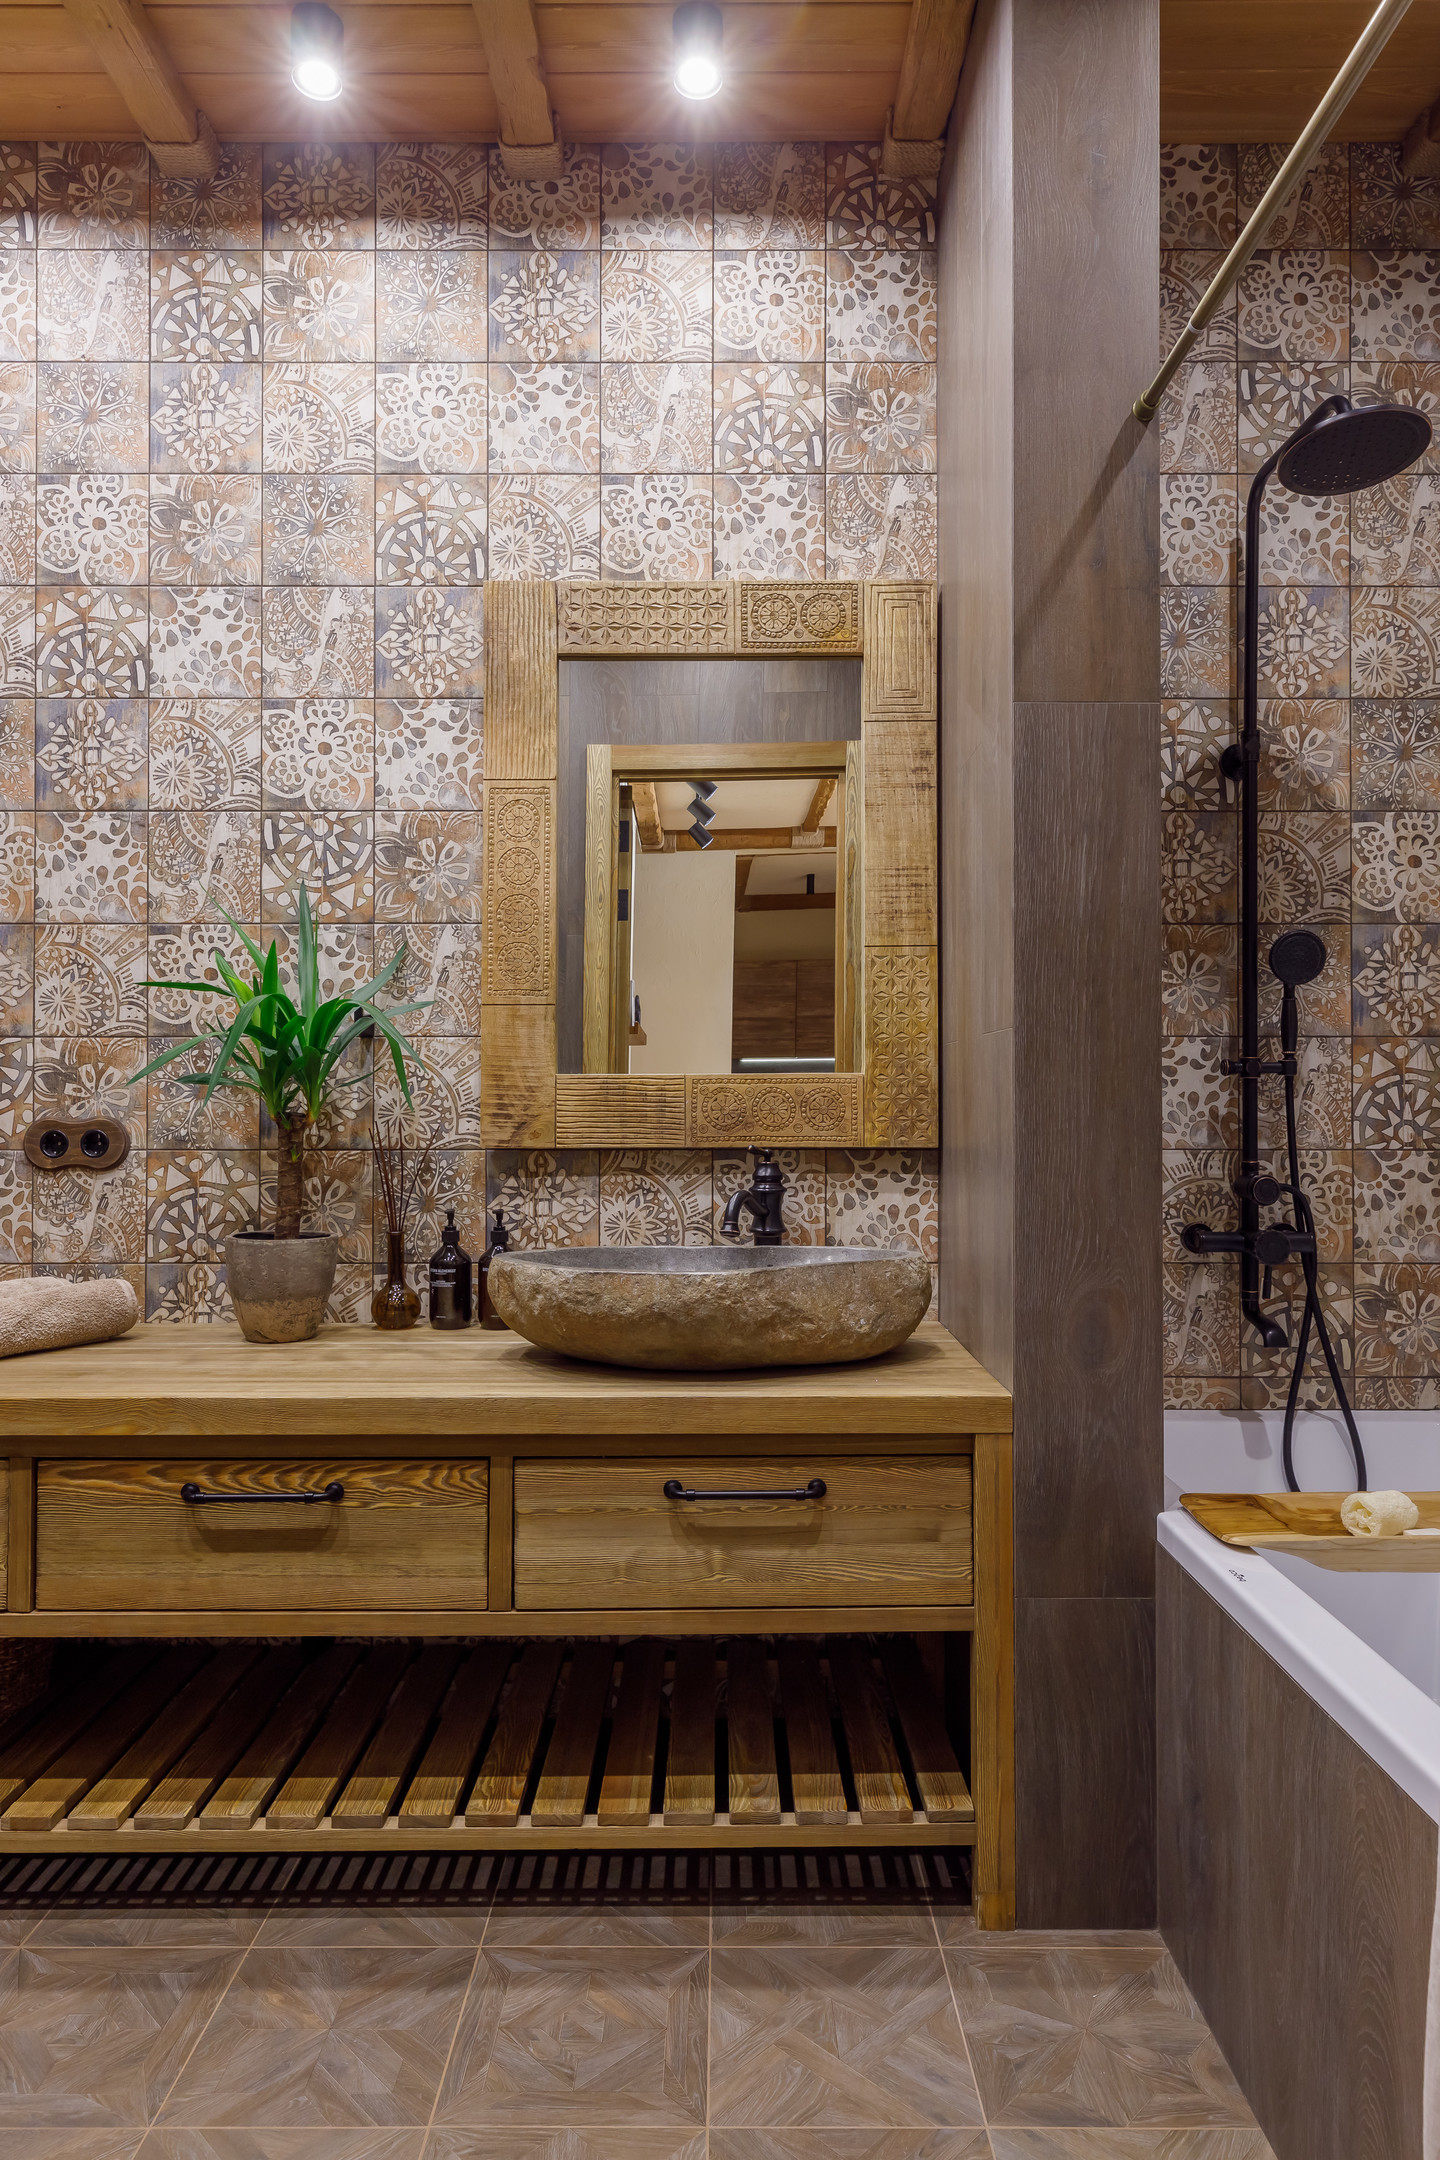 Hệ thống tủ lưu trữ, khung gương, nắp bồn toilet và nắp ở vị trí xả nước bằng gỗ tạo cái nhìn đồng nhất, bồn rửa bằng đá mang đến cảm giác gần gũi với thiên nhiên.